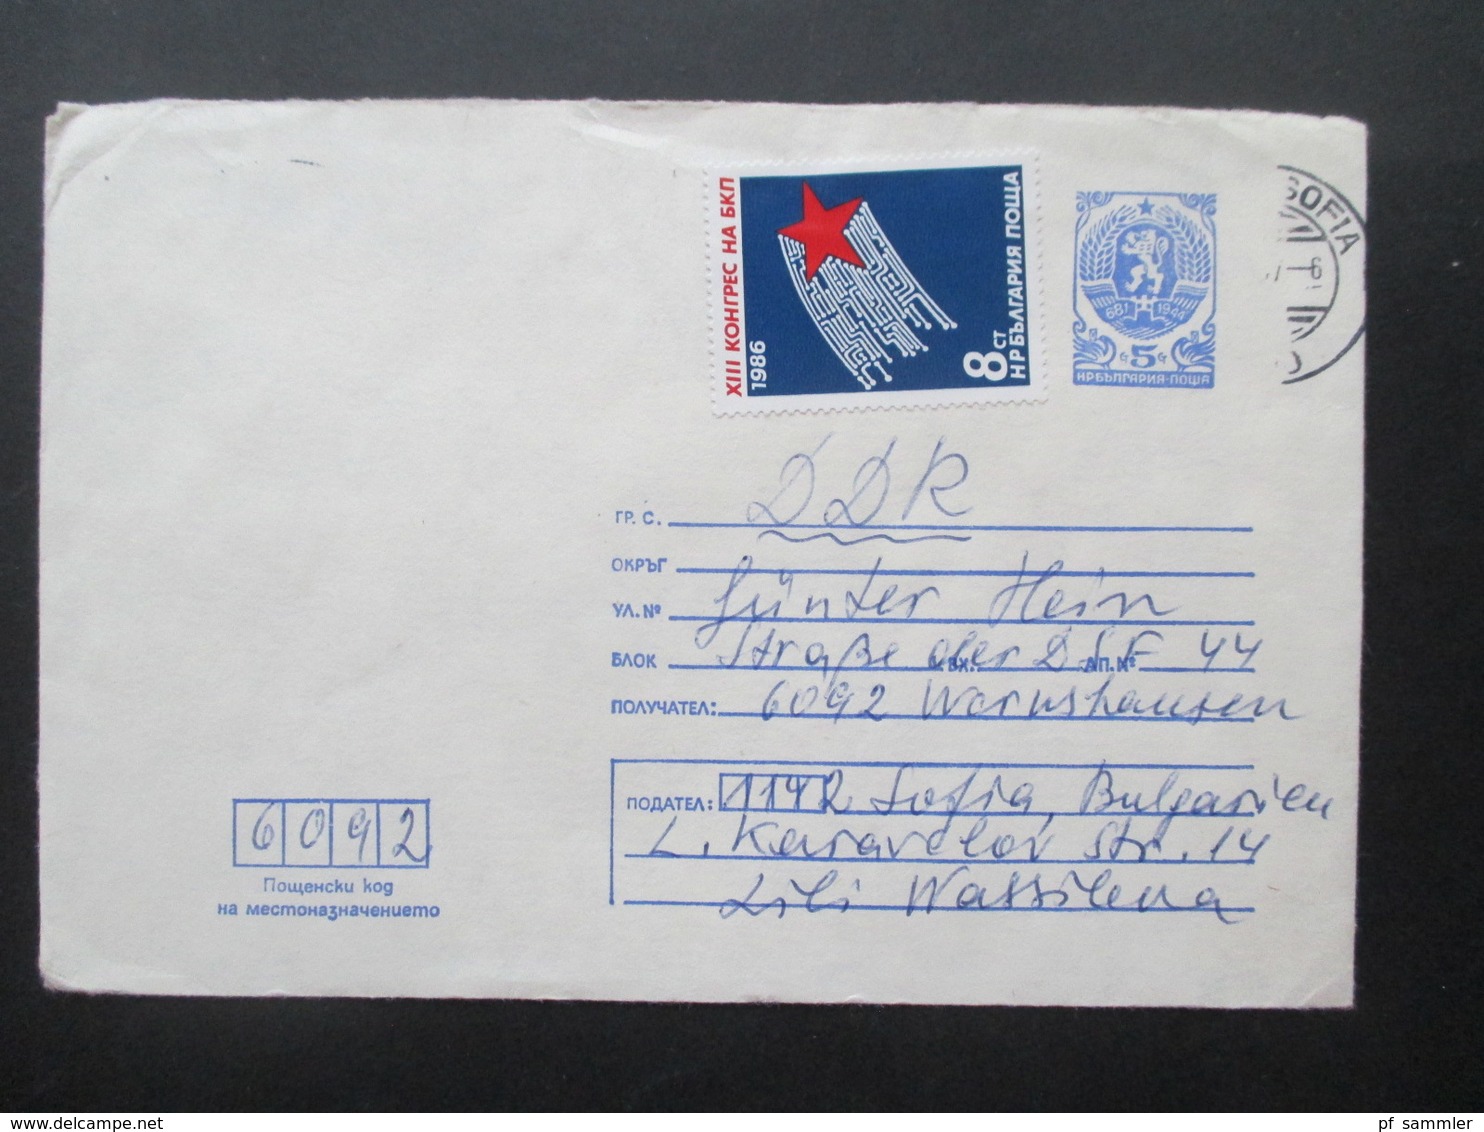 Bulgarien 1980er Jahre GA Umschläge alle als Luftpost in die DDR viele schöne Zusatzfrankaturen! Insgesamt 38 Belege